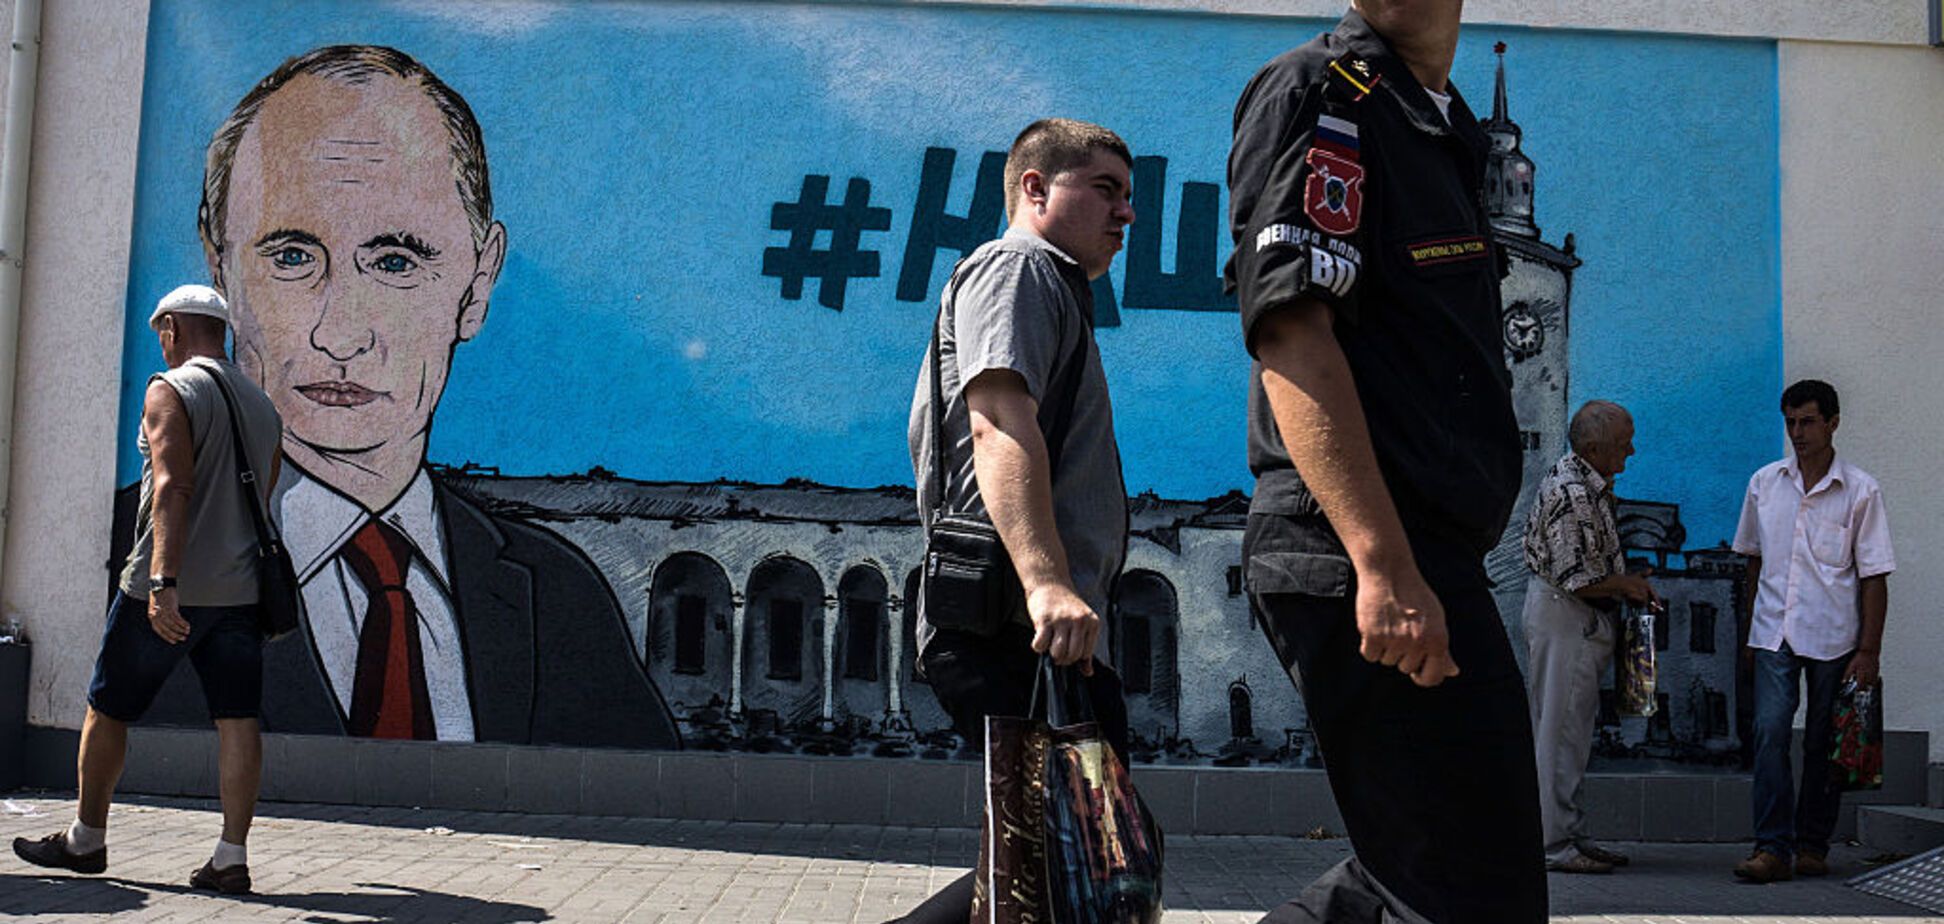 'Можна ще доплатити?' У Росії розповіли про нову проблему через анексований Крим